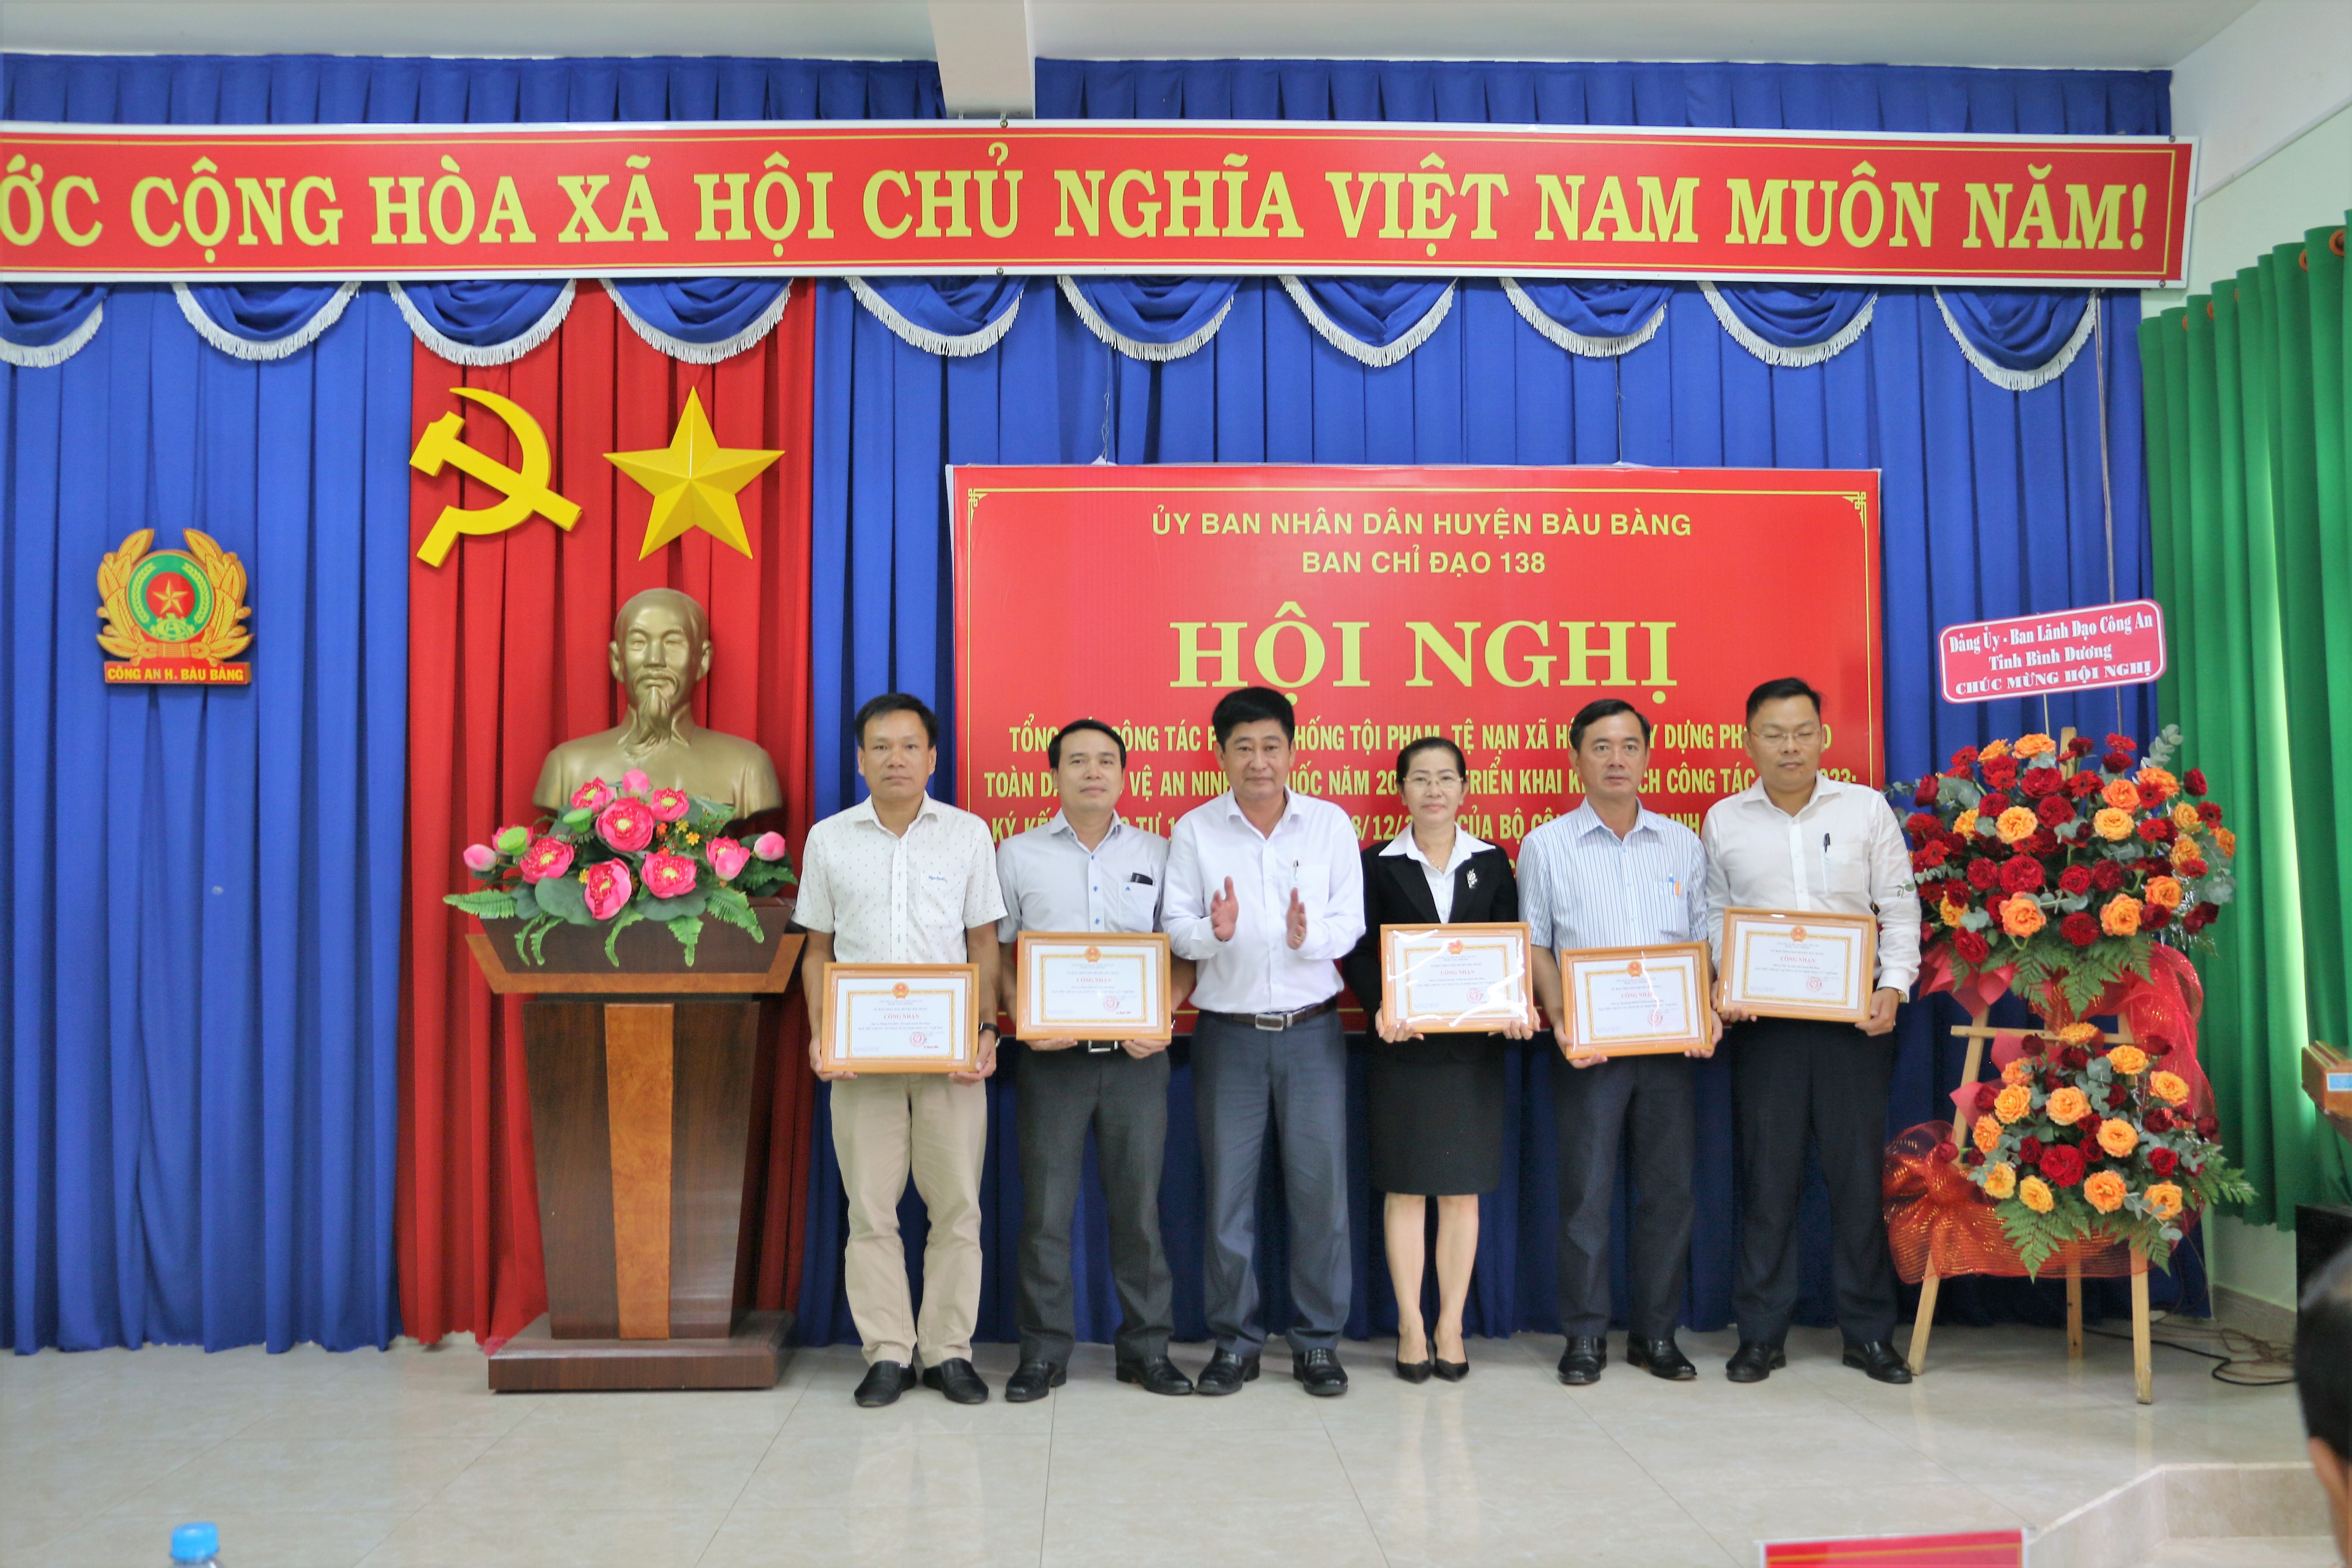 Ông Nguyễn Phú Cường - Phó chủ tịch UBND huyện-Trao giấy chứng chận cho các cơ quan, doanh nghiệp, cơ sở giáo dục đạt an toàn về an ninh trật tự.